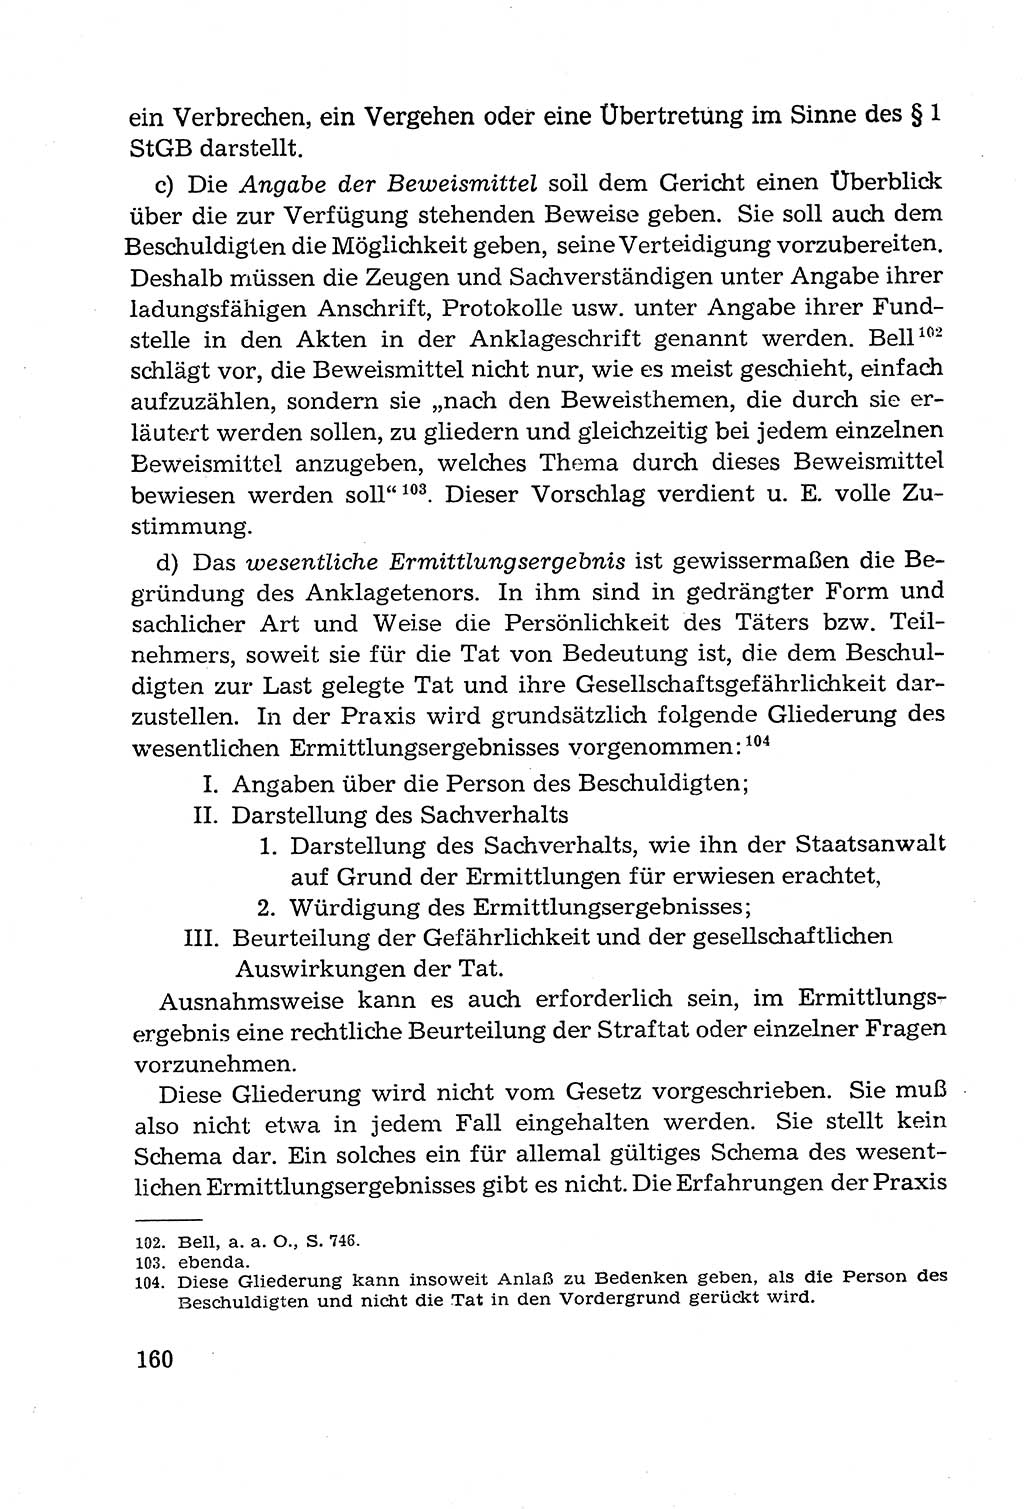 Leitfaden des Strafprozeßrechts der Deutschen Demokratischen Republik (DDR) 1959, Seite 160 (LF StPR DDR 1959, S. 160)